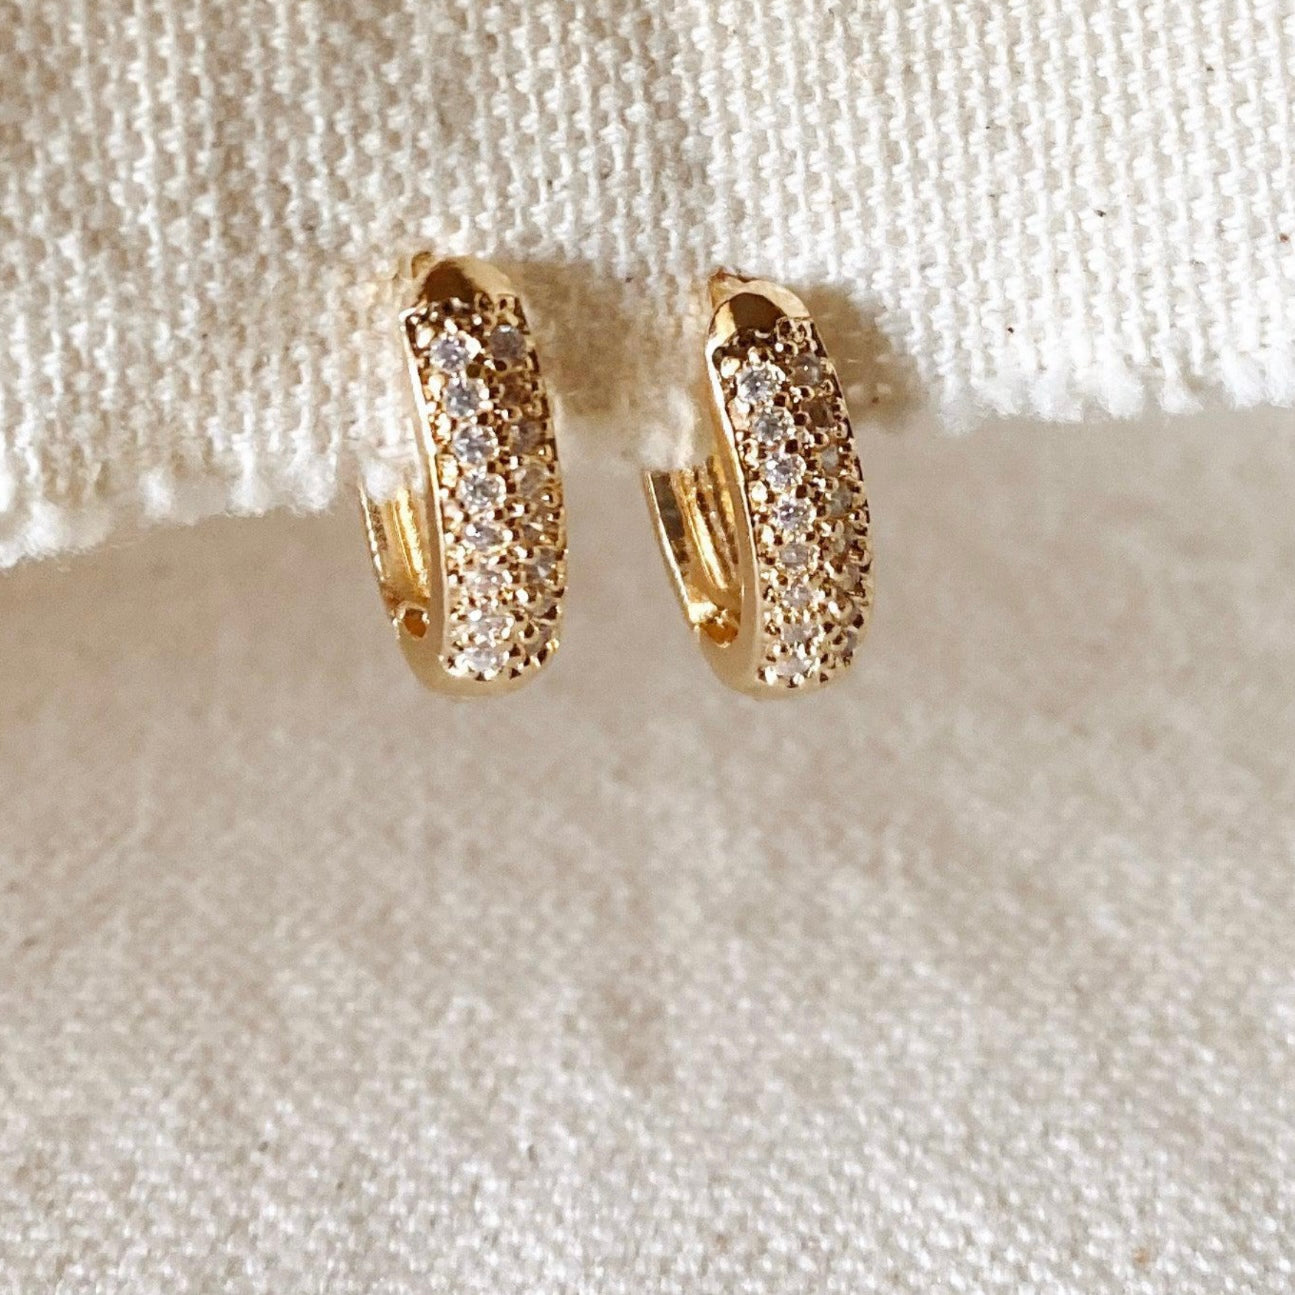 Oval Clicker Hoop Cz Diamonds Gold Filled Earrings